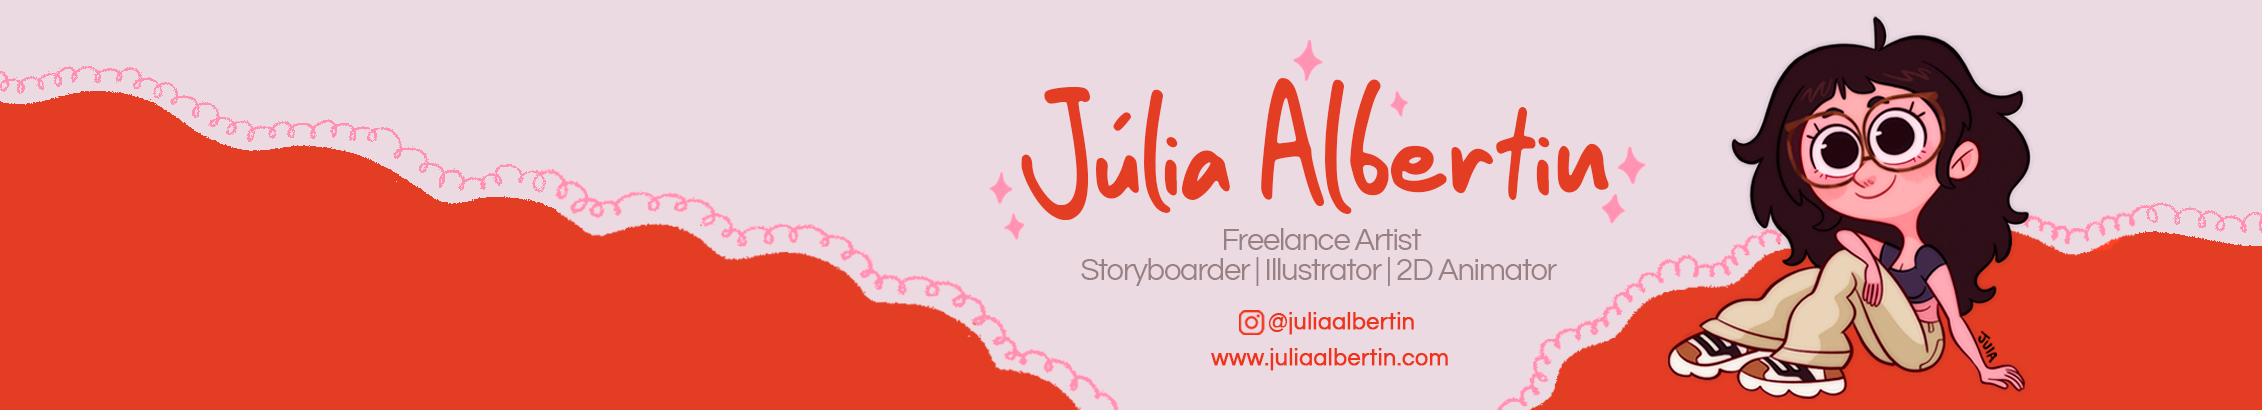 Júlia Albertin's profile banner